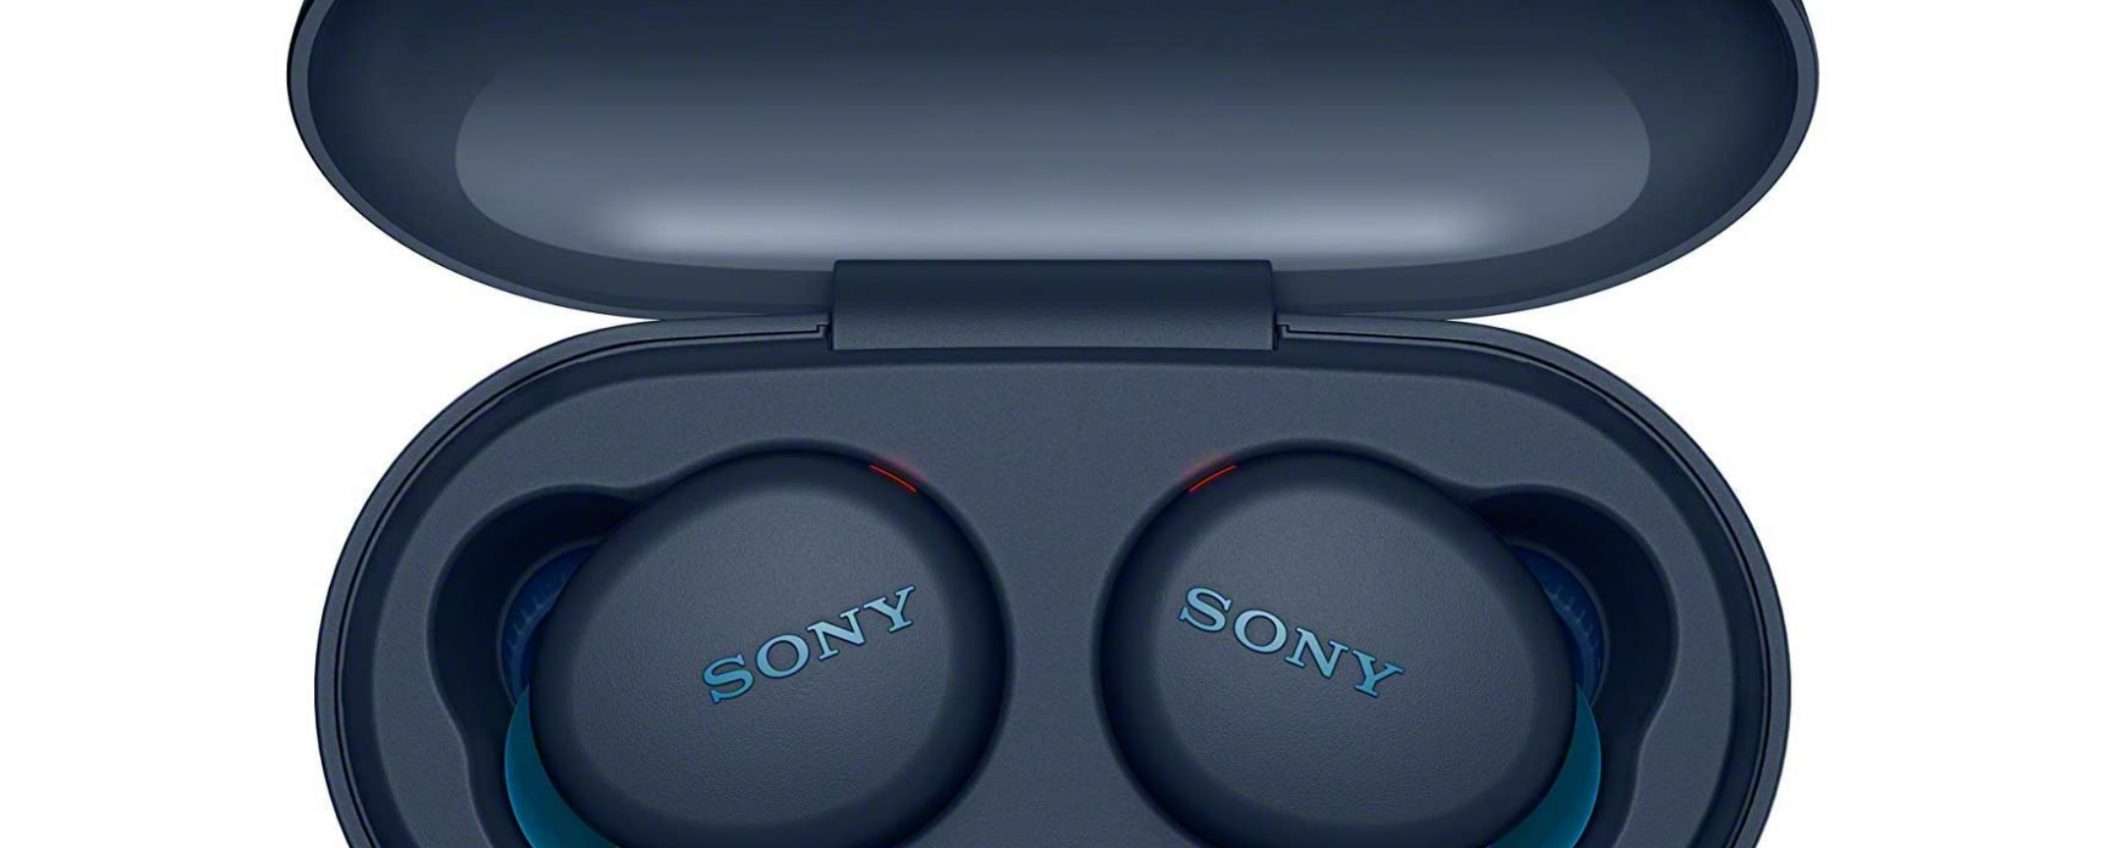 Auricolari Bluetooth Sony a meno di metà prezzo: un affare vero e proprio